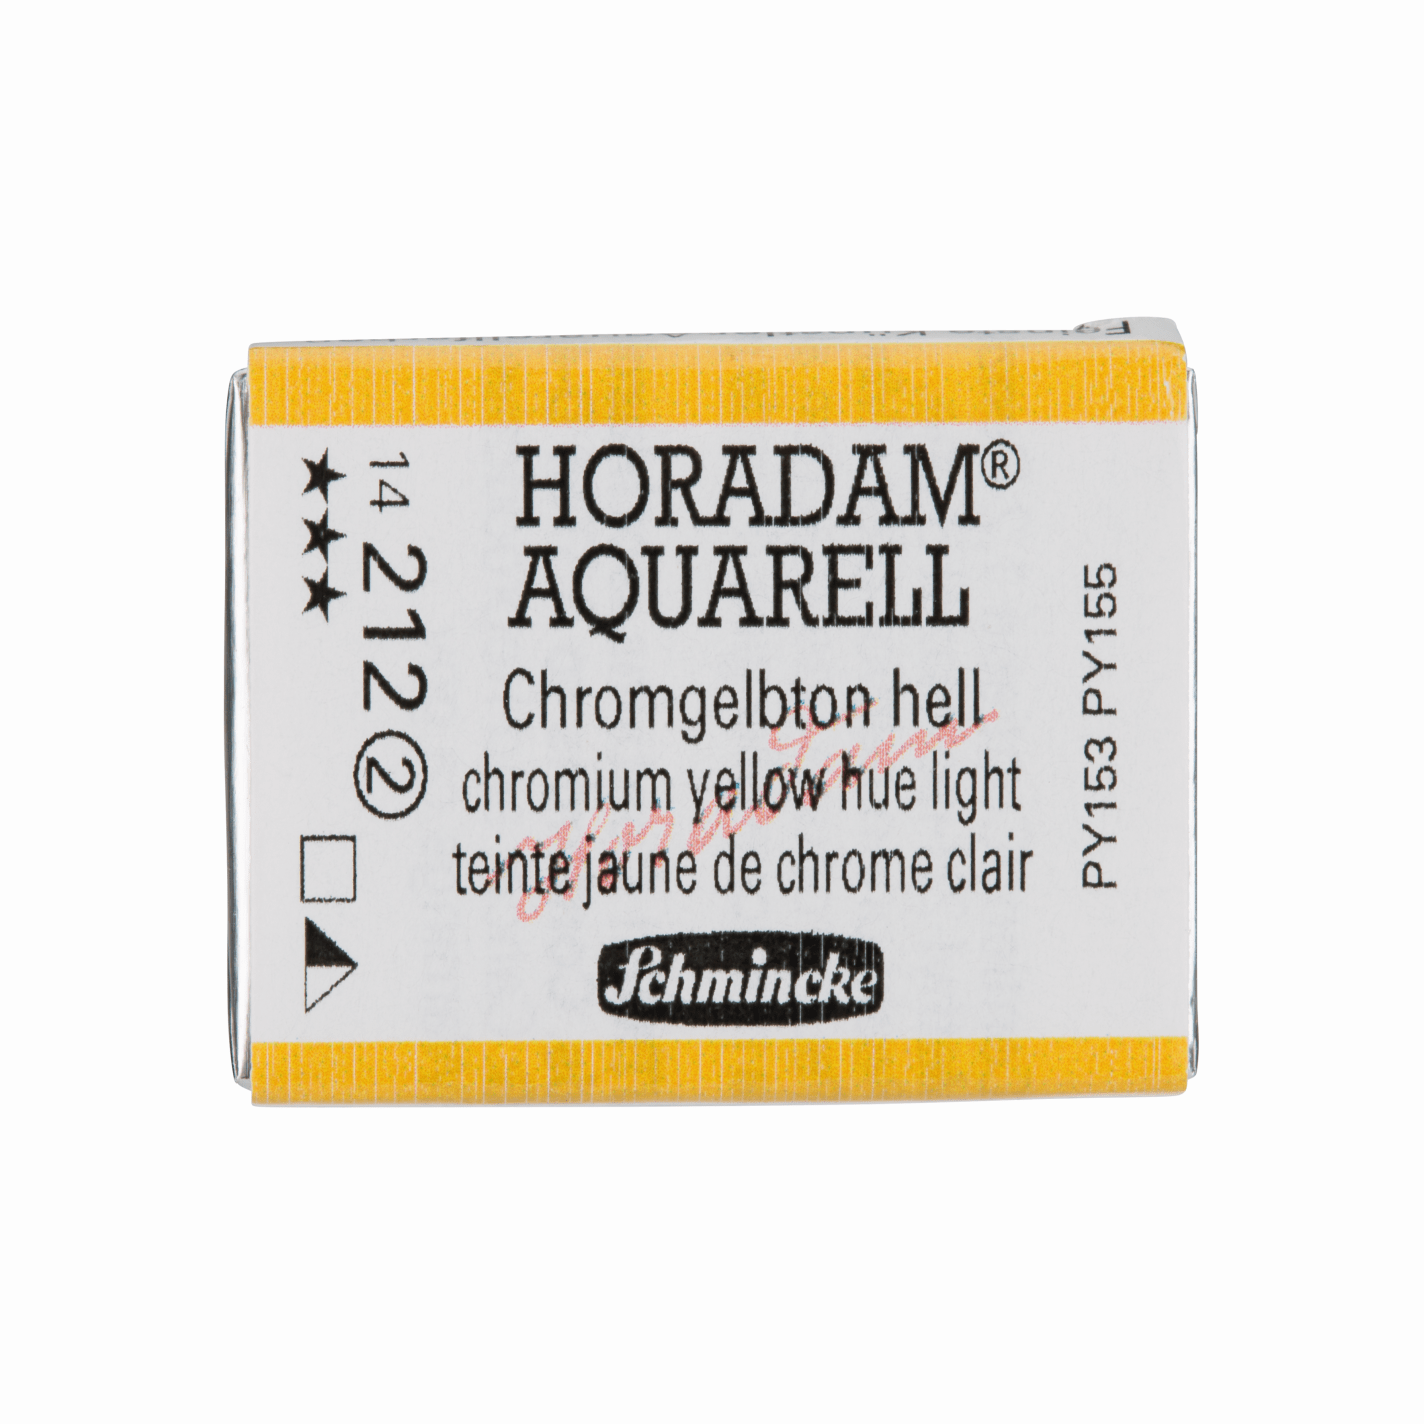 Schmincke Horadam Aquarell pans 1/1 pan Yellow Hue Light